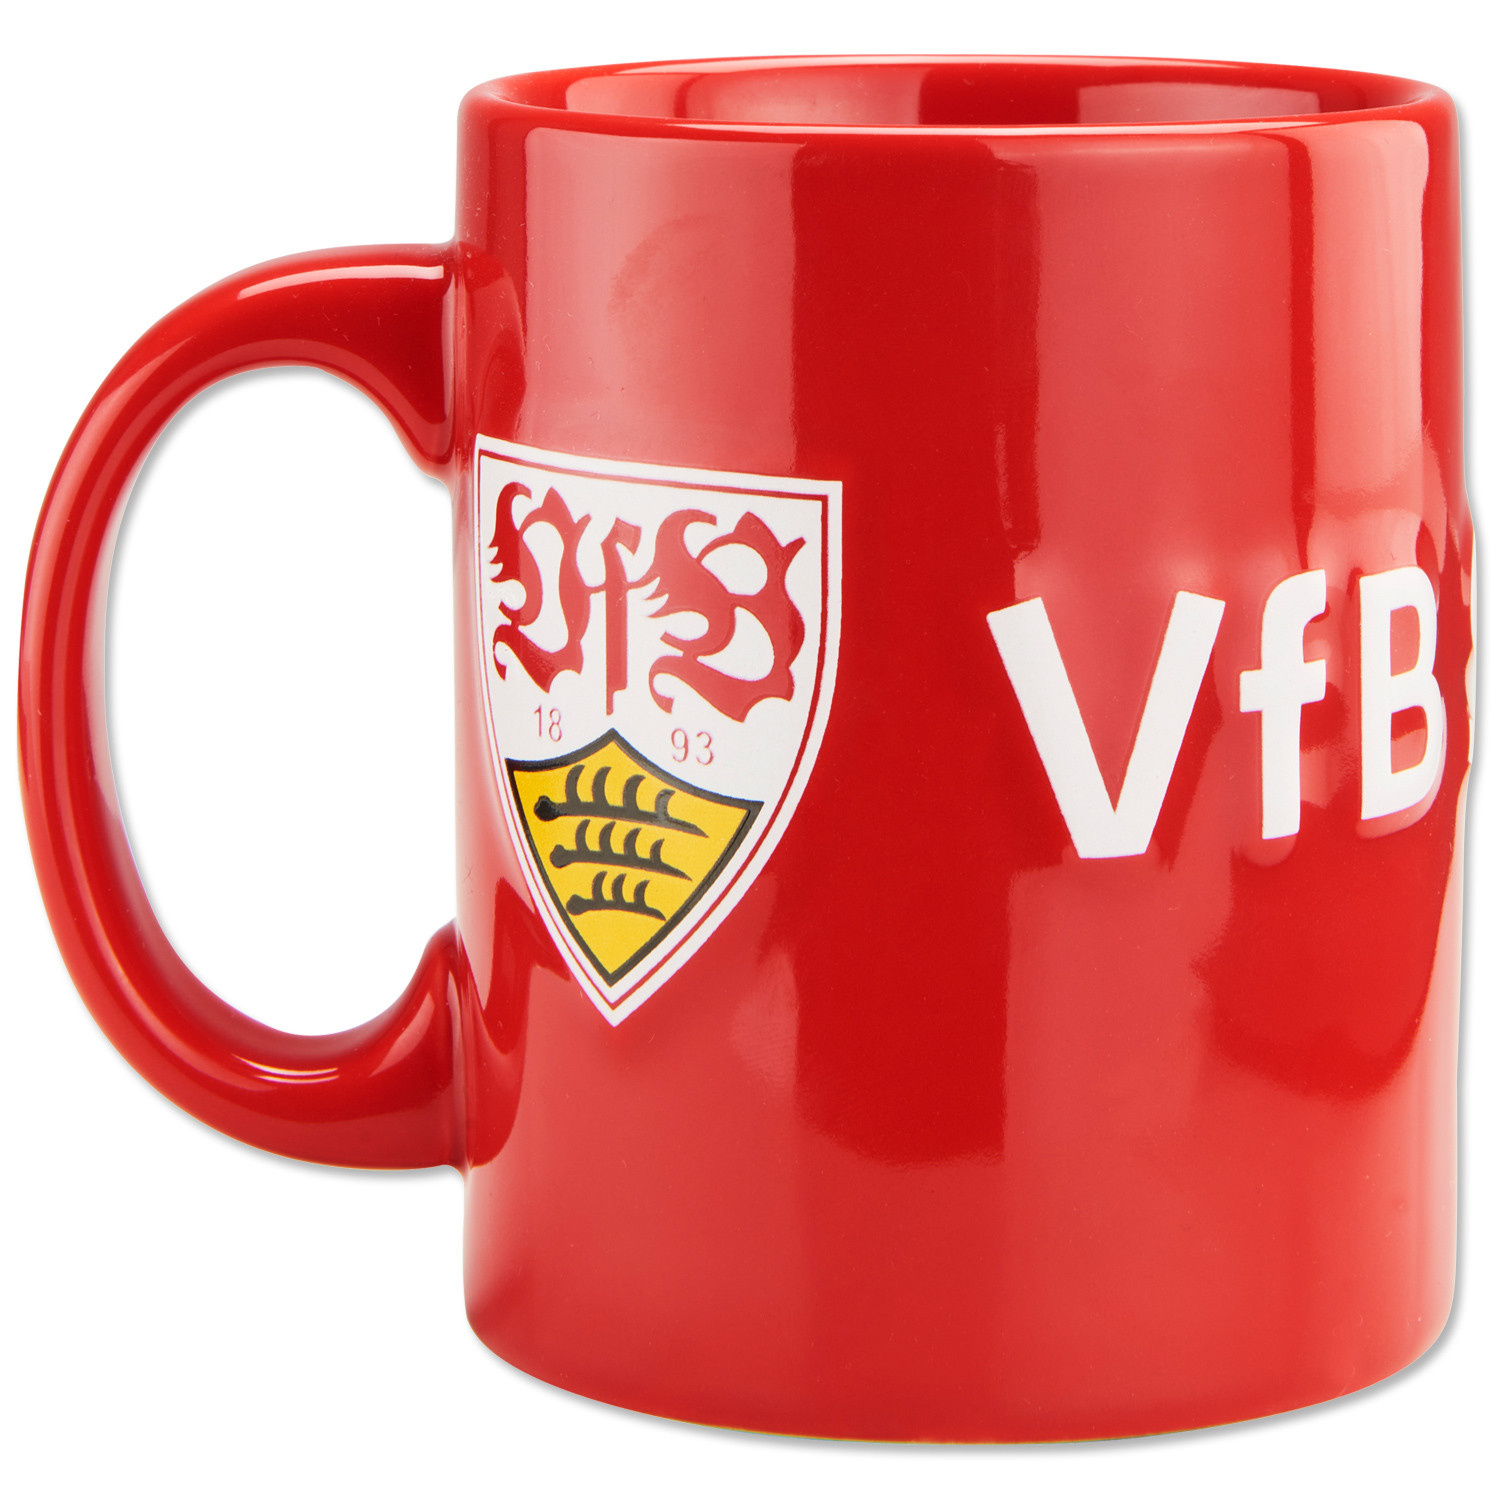 Tasse mein Verein VfB Stuttgart 